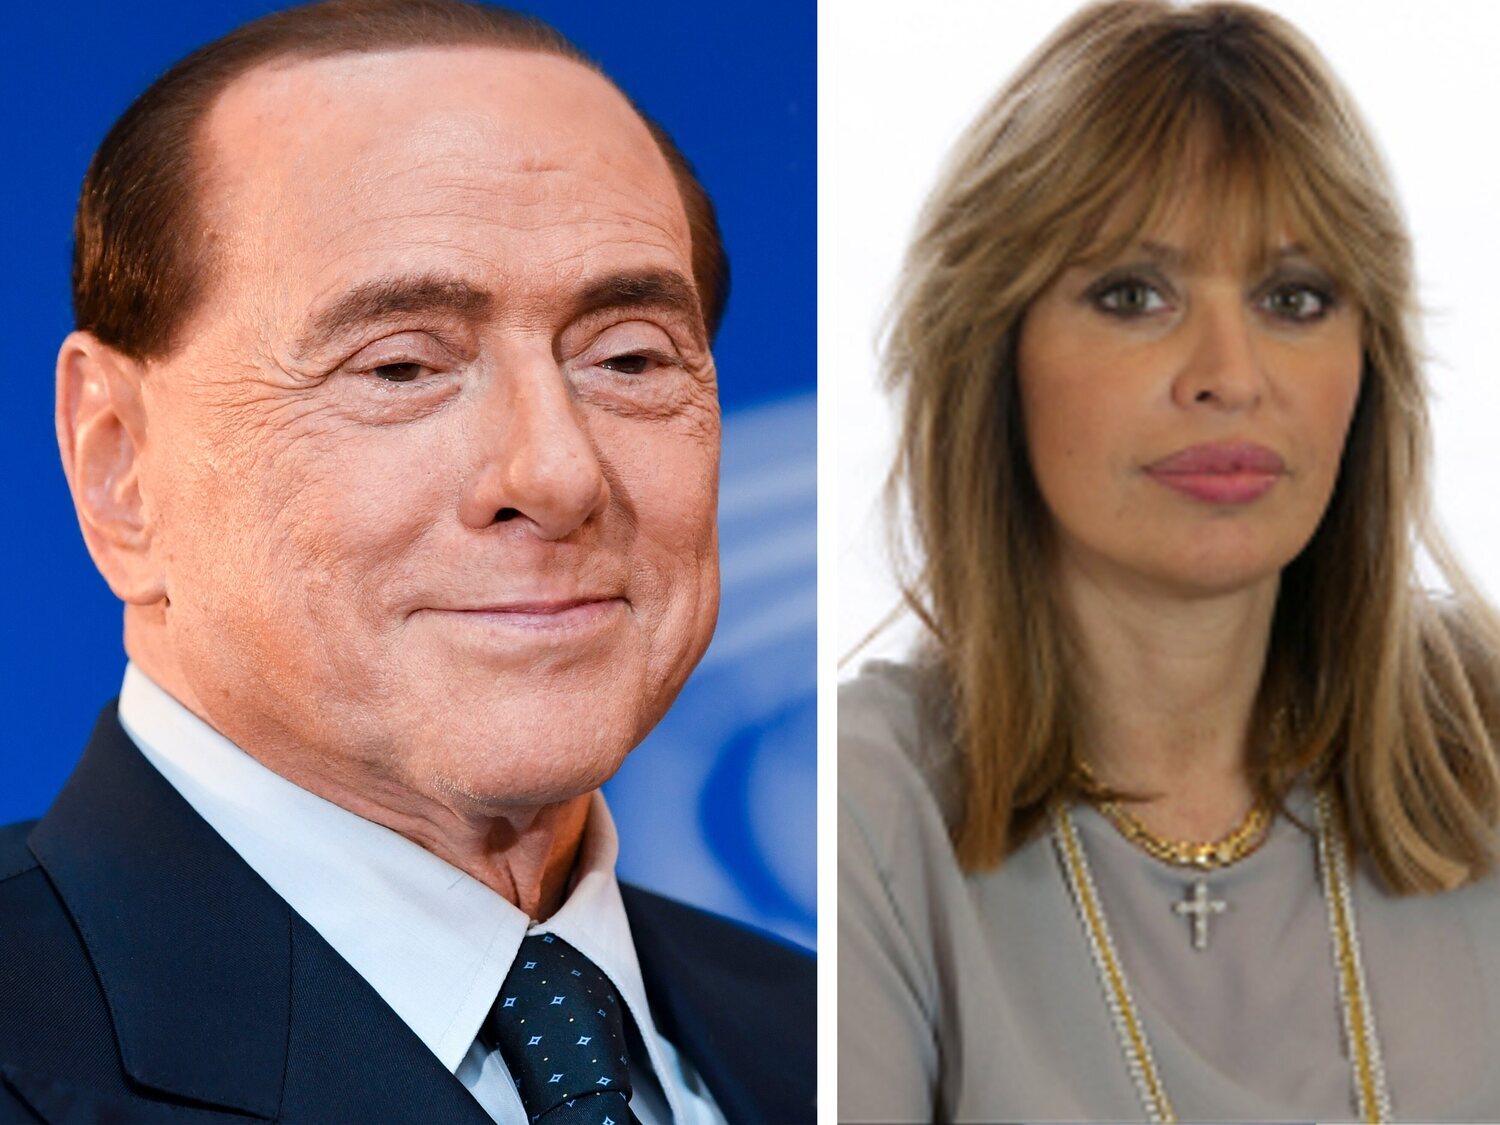 Alessandra Mussolini, nieta del dictador italiano, nueva diputada en el Parlamento Europeo en sustitución de Berlusconi